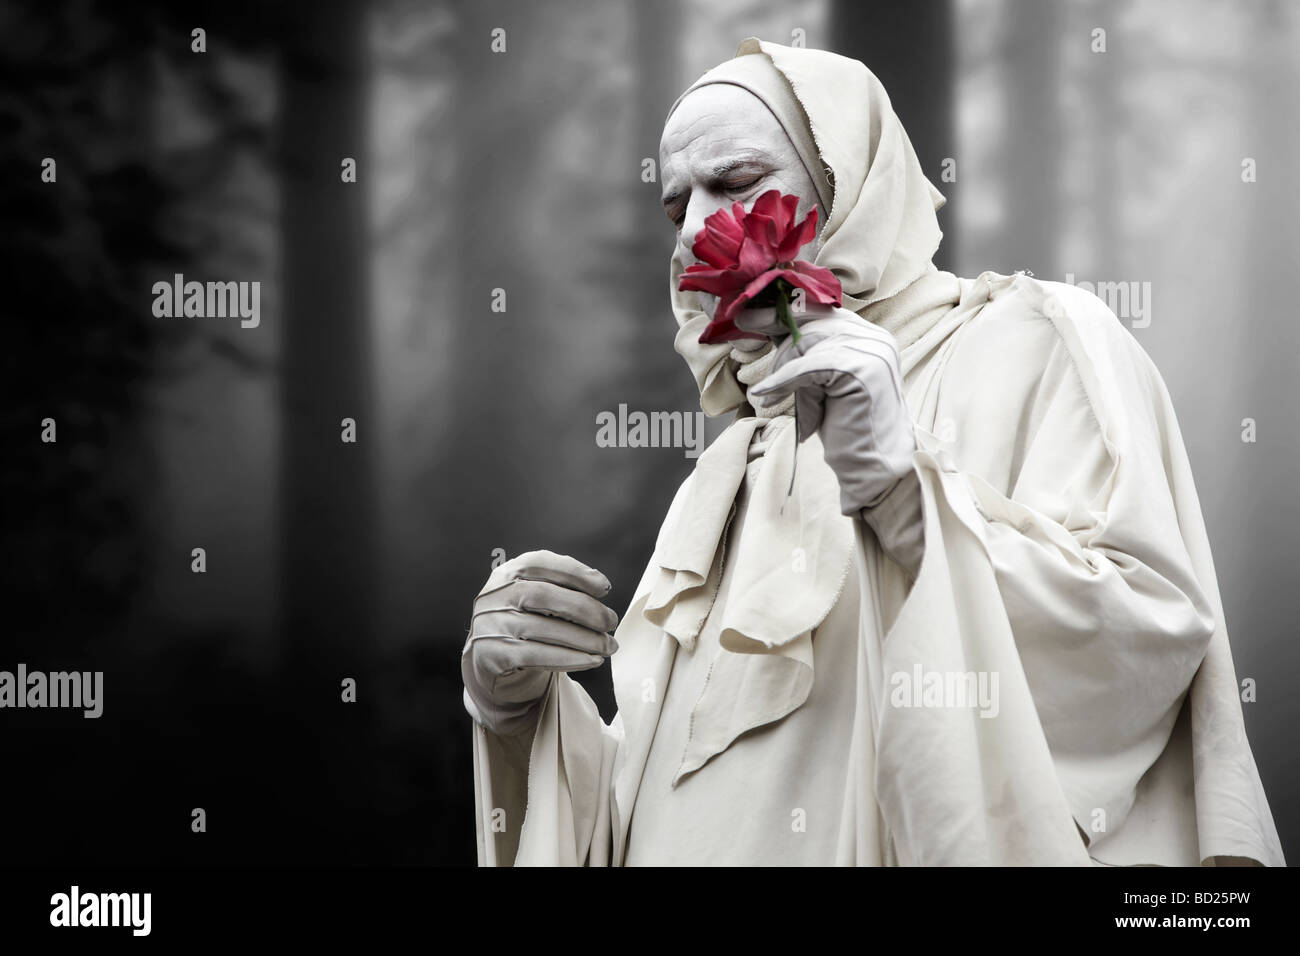 El hombre, envuelto en un paño blanco, sosteniendo una flor en su mano, vagando a través de un bosque neblinoso Foto de stock